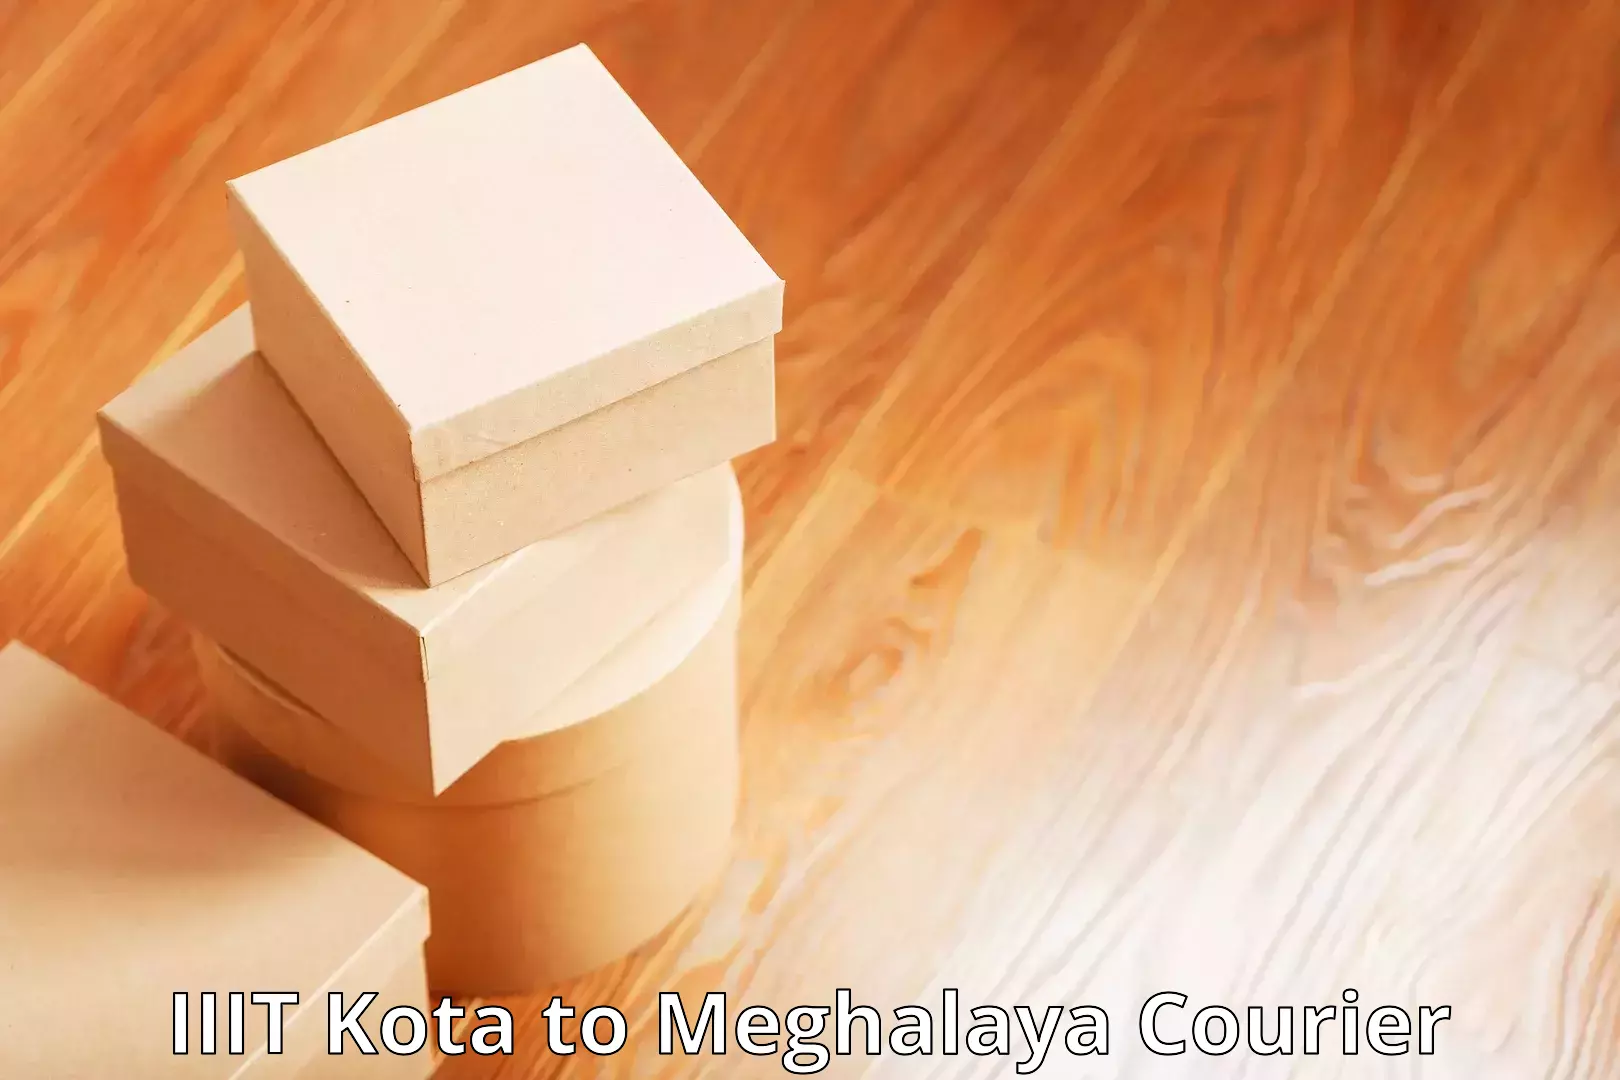 Modern delivery methods in IIIT Kota to Meghalaya